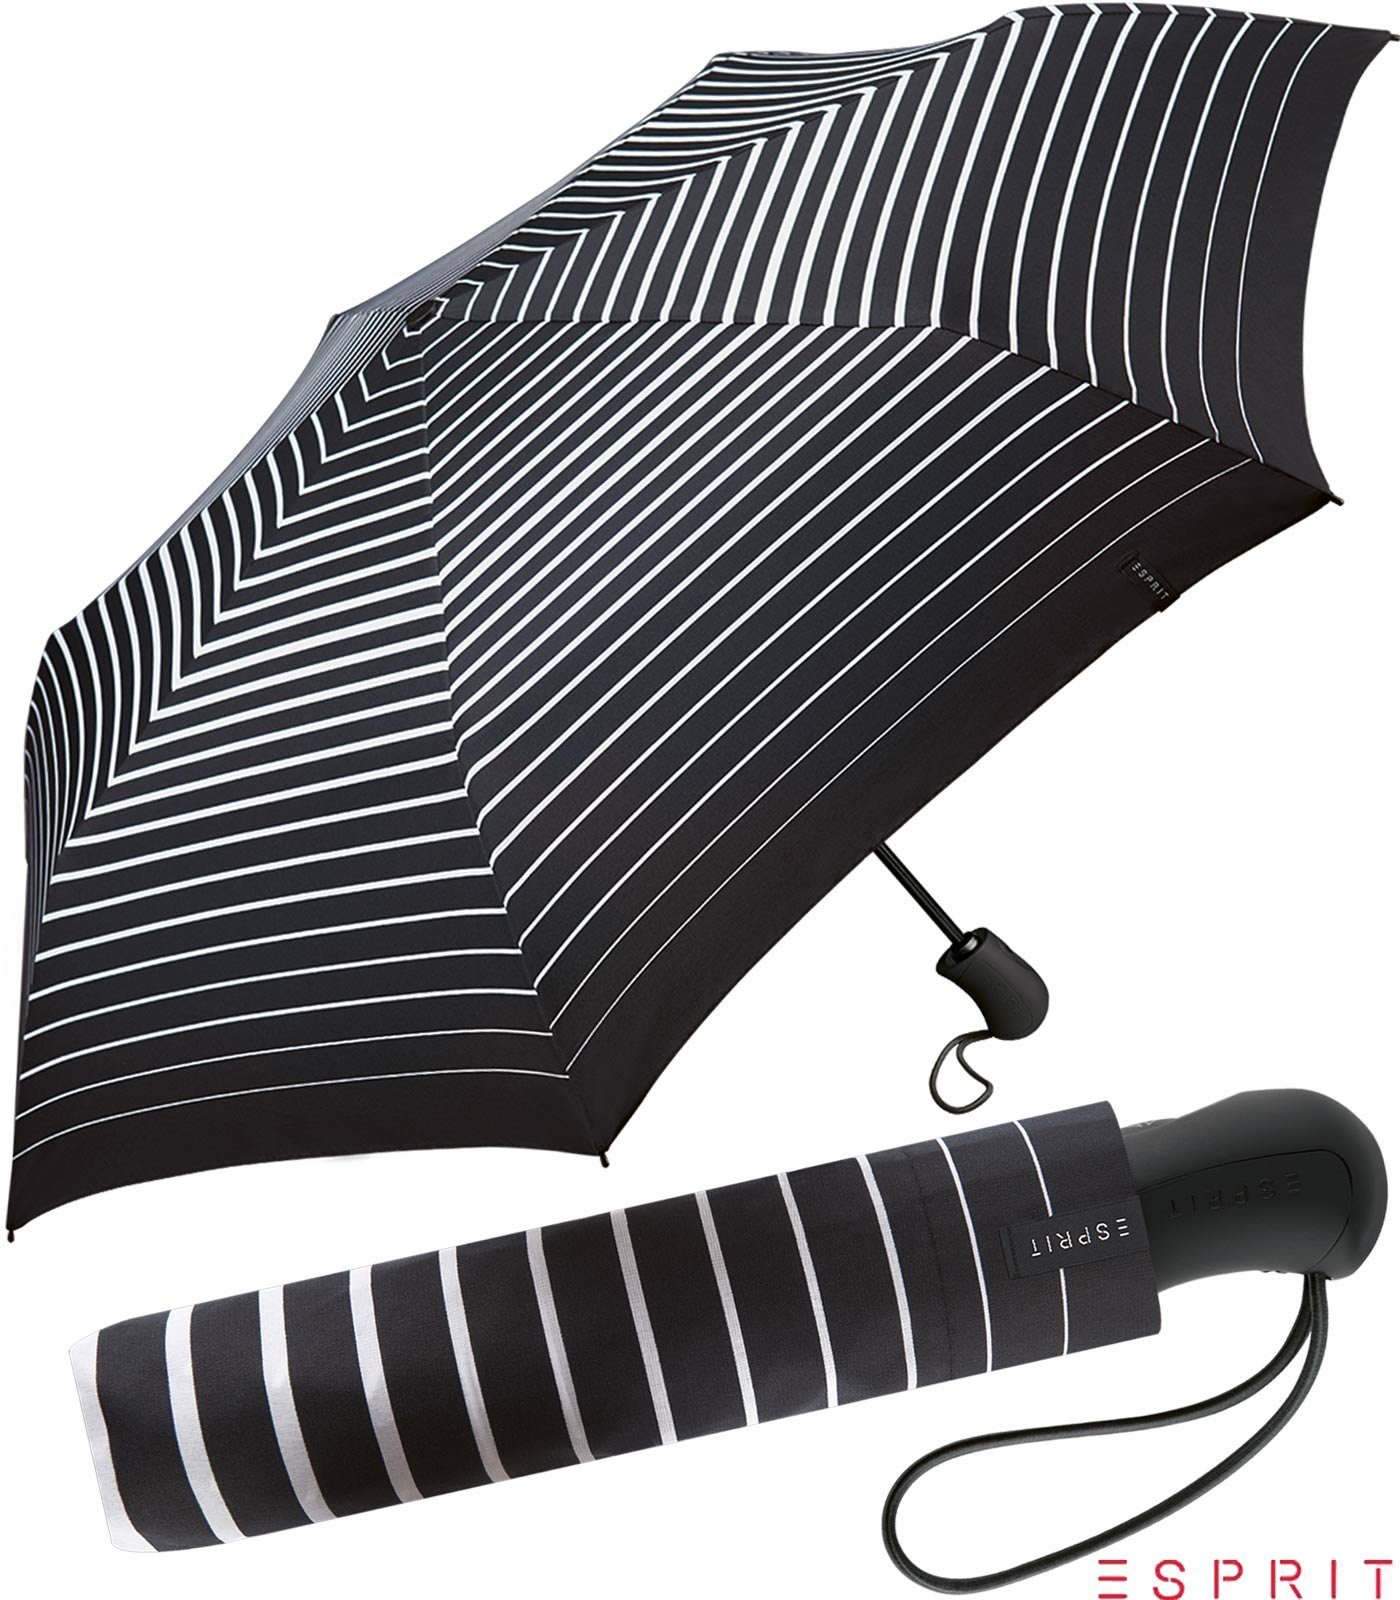 Esprit Taschenregenschirm Easymatic Light Auf-Zu Automatik Degradee Stripe - black, stabil, praktisch, in moderner Streifen-Optik schwarz-weiß